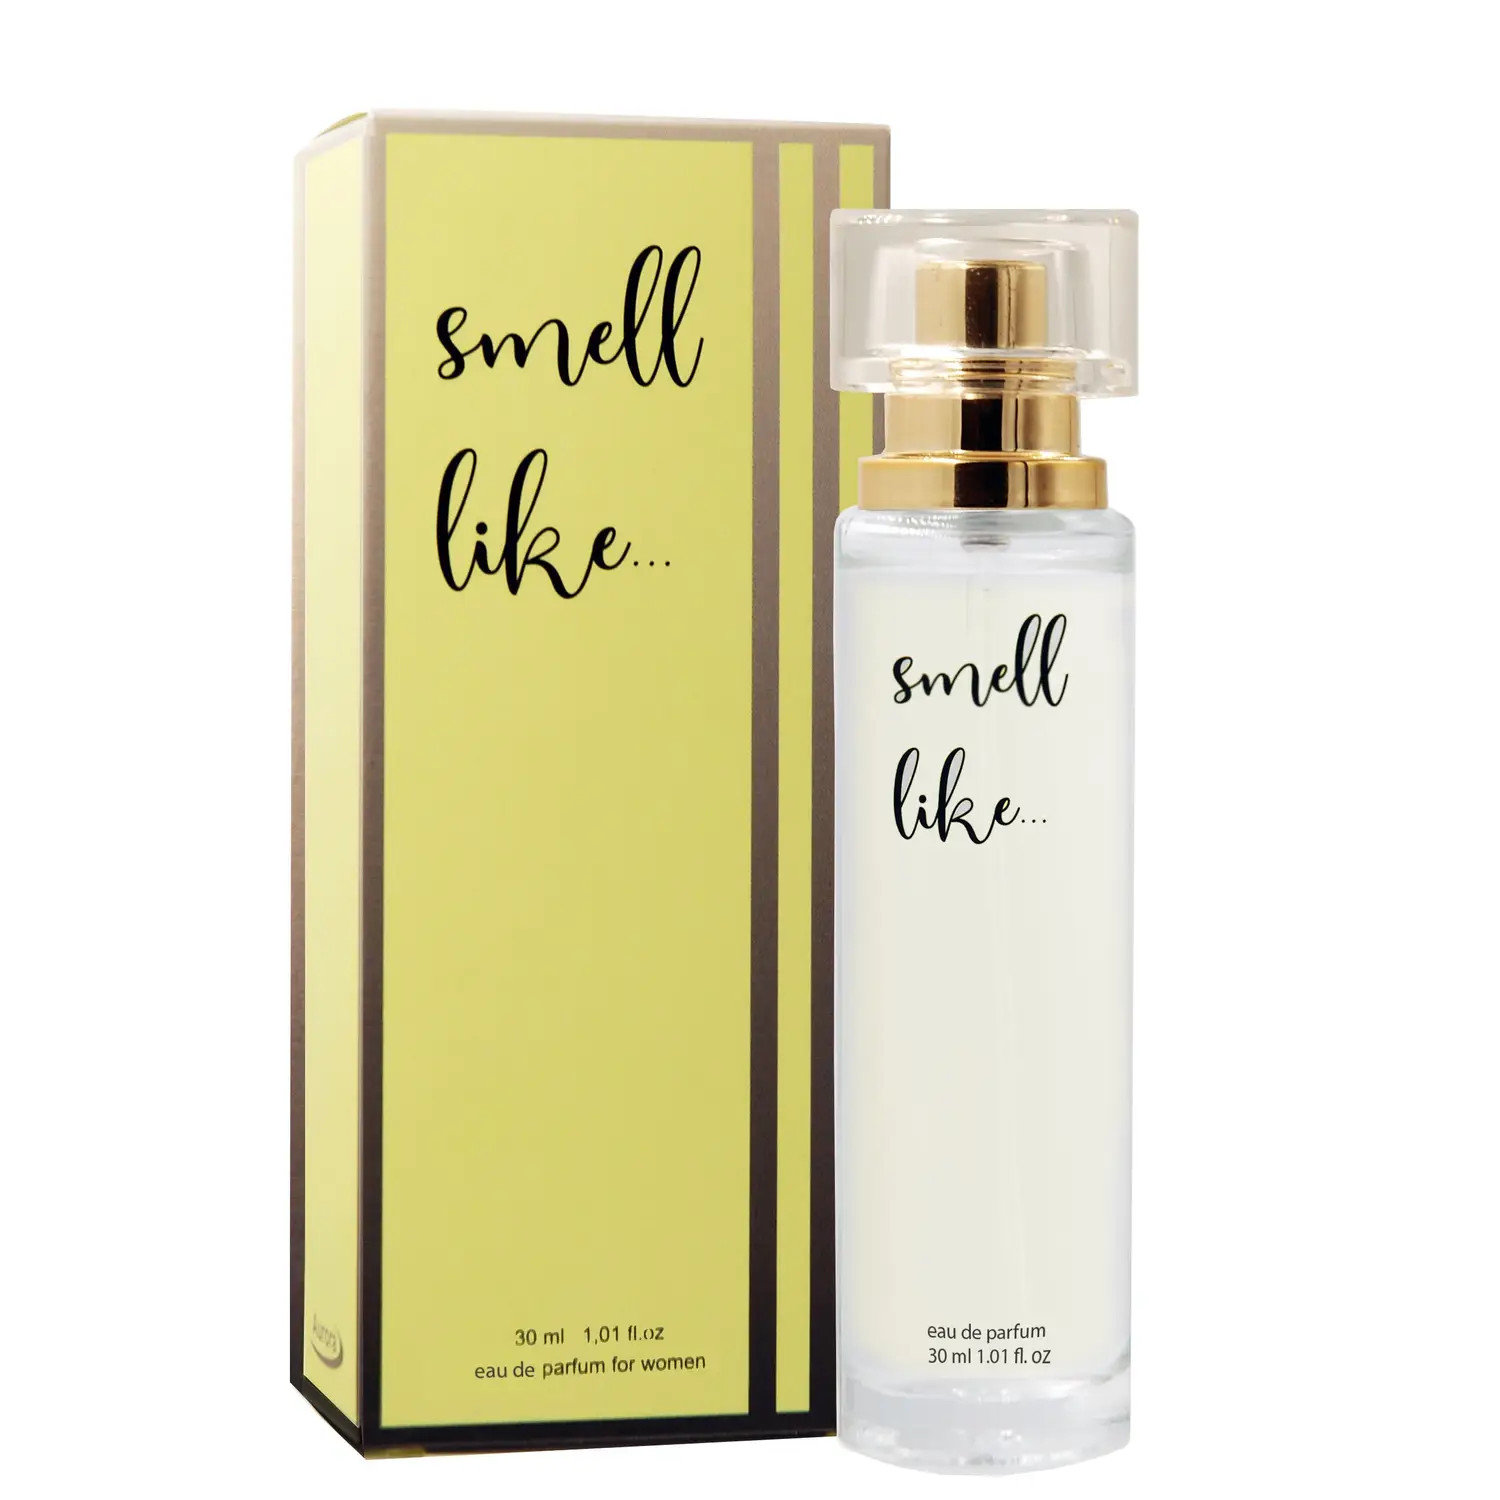       Smell Like # 05 for Women, 30 ml